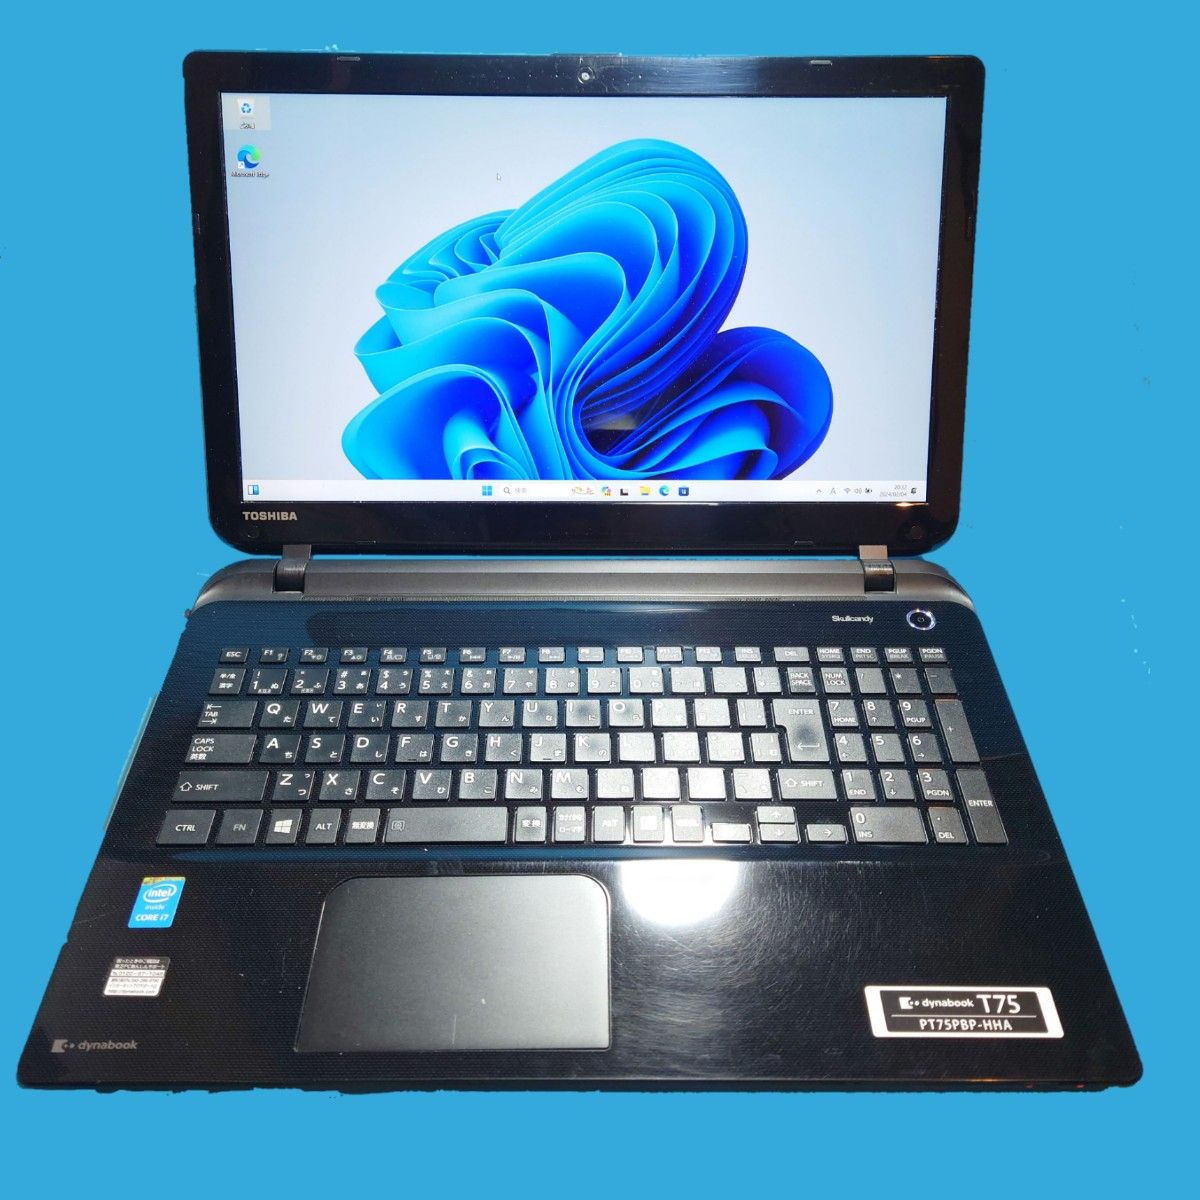 東芝 dynabook T75/PB Core i7 5500U SSD 512GB Windows11 Office2021